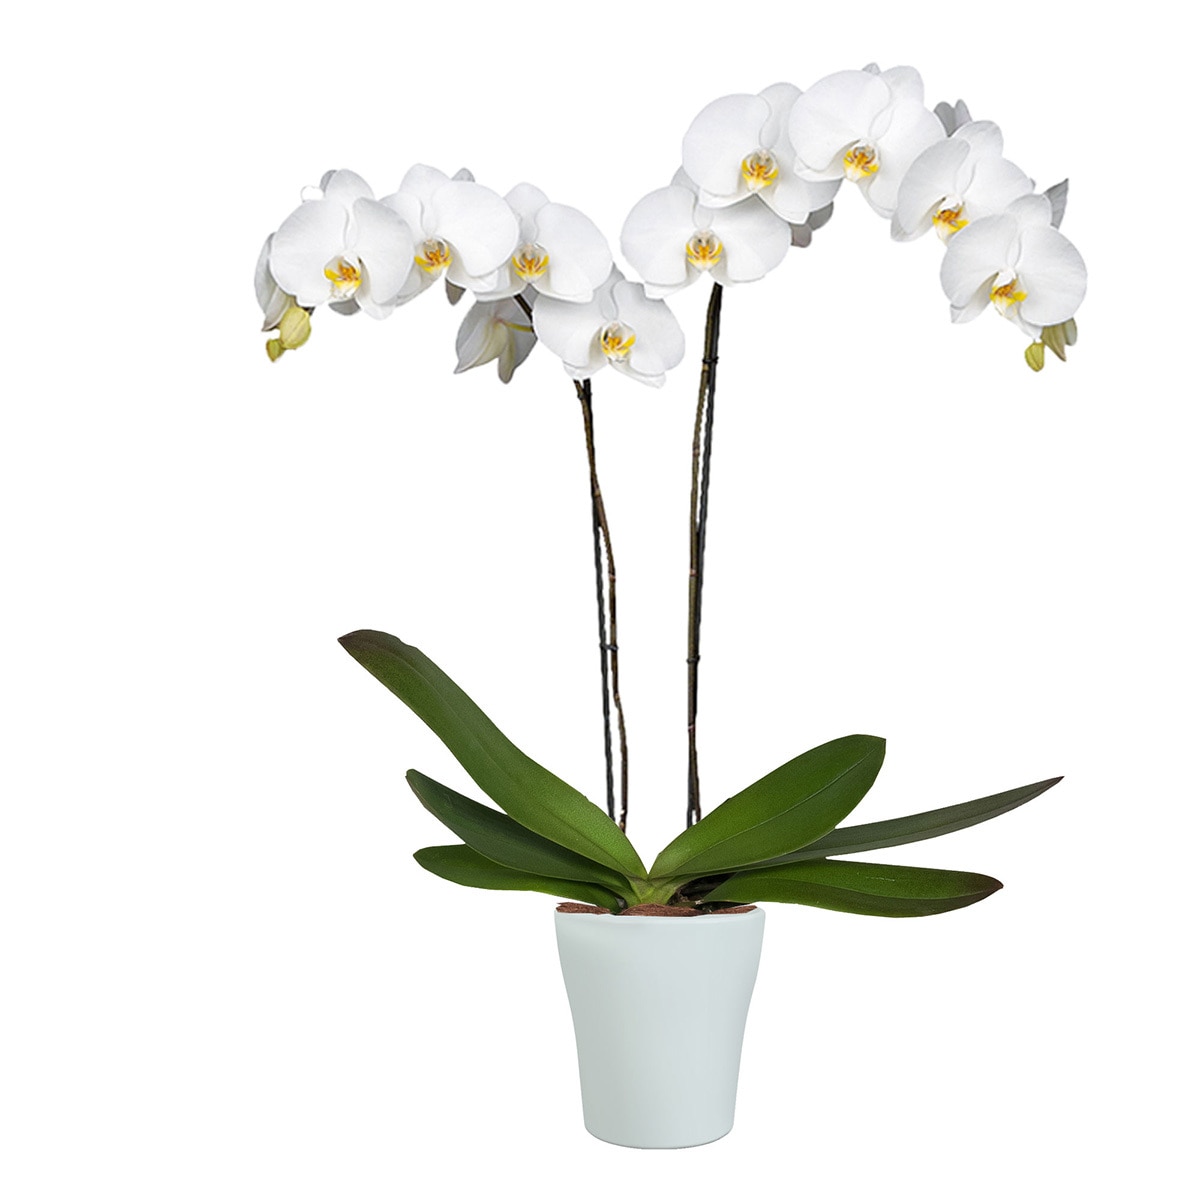 Details 100 picture orquideas blancas naturales precio